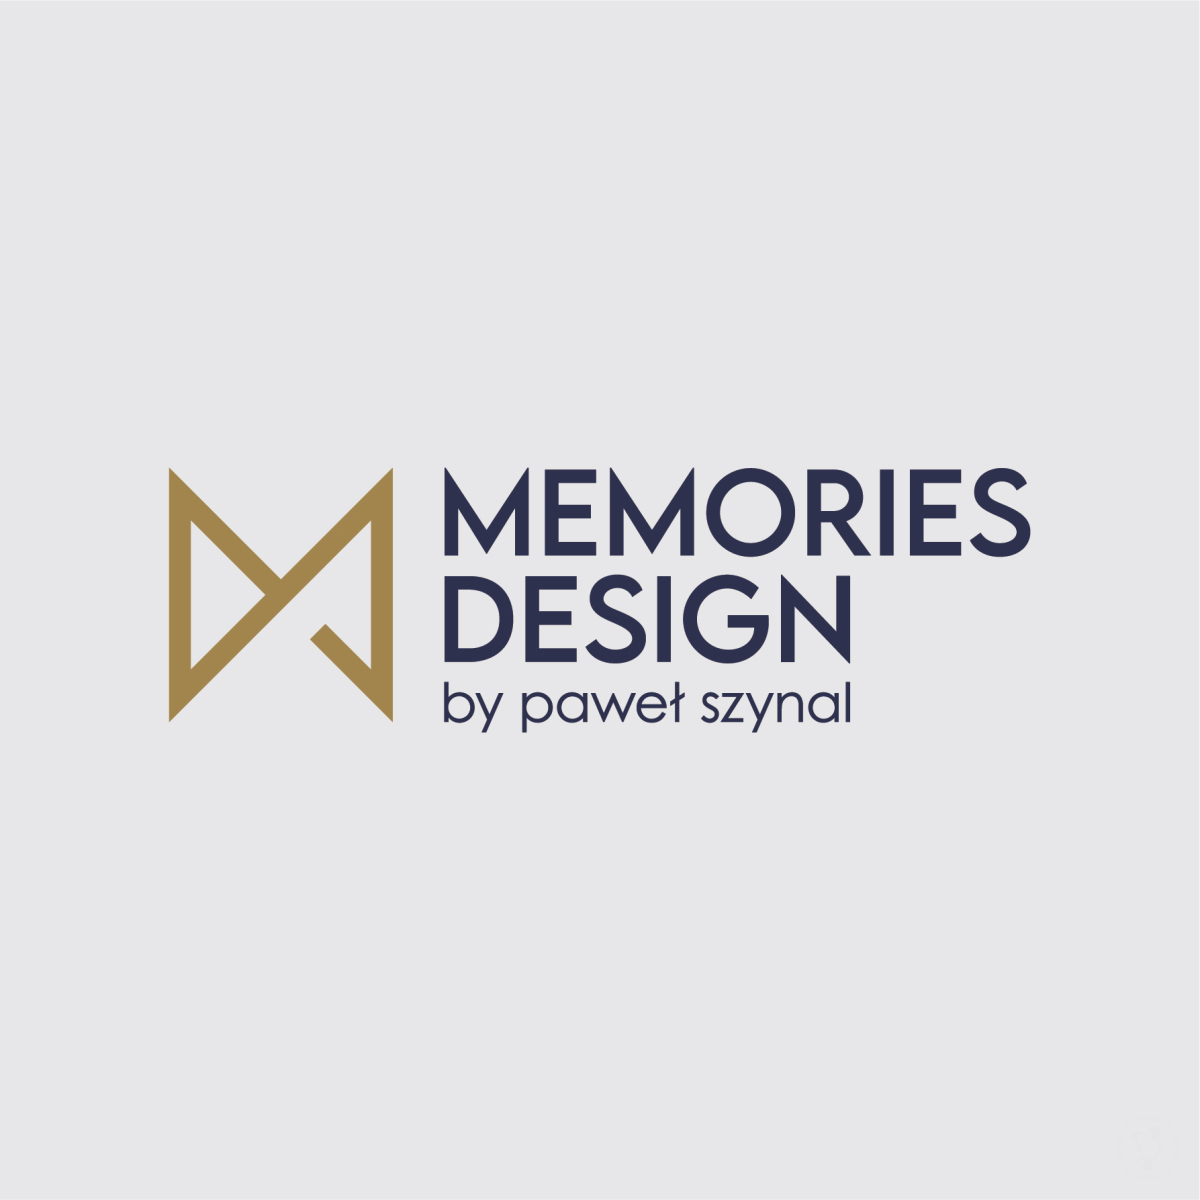 Memories design by paweł szynal | DJ na wesele Chorzów, śląskie - zdjęcie 1